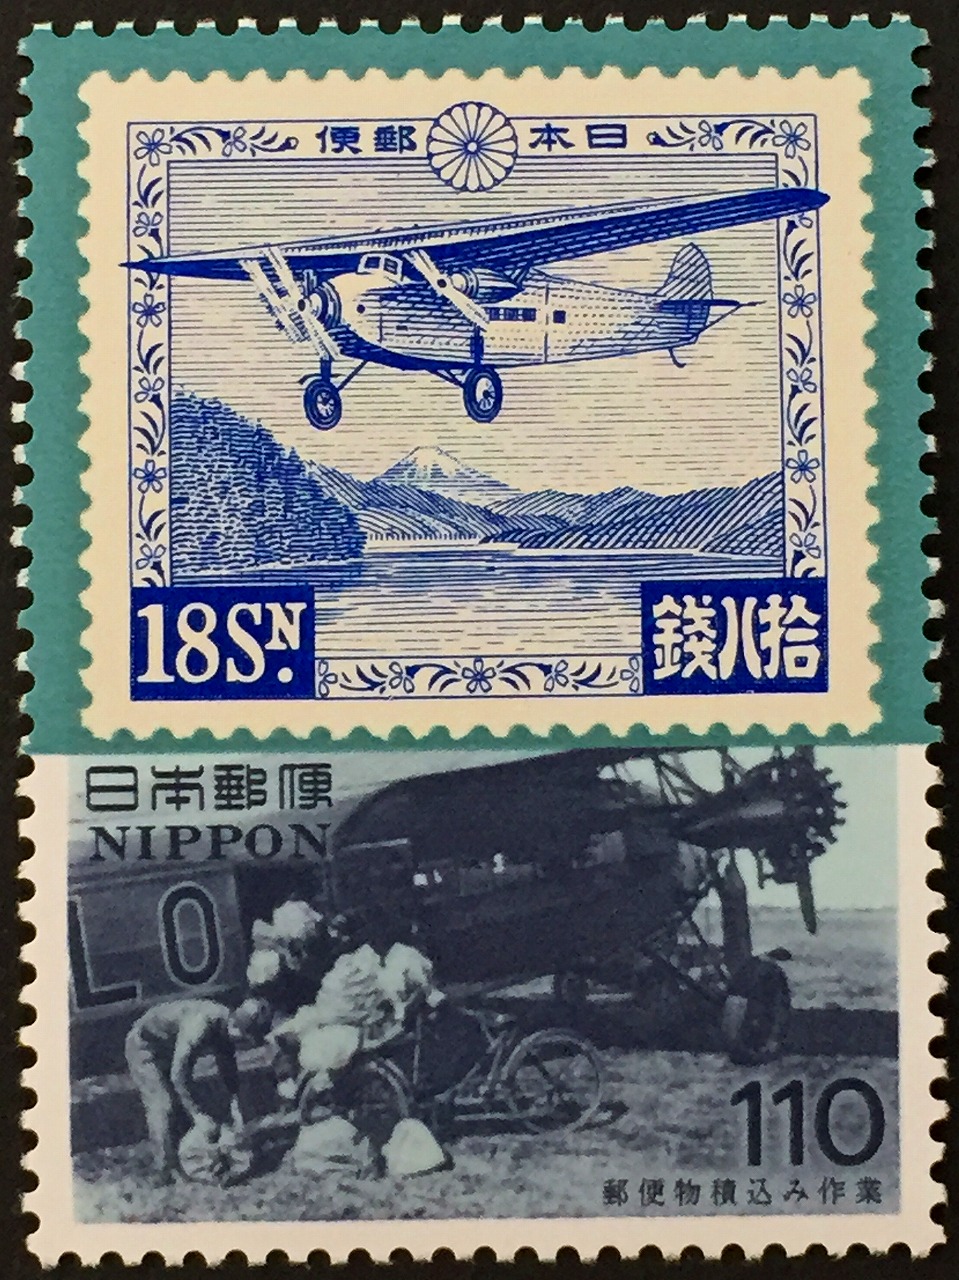 1995年芦ノ湖航空切手と航空機への郵便物積み込み作業 110円